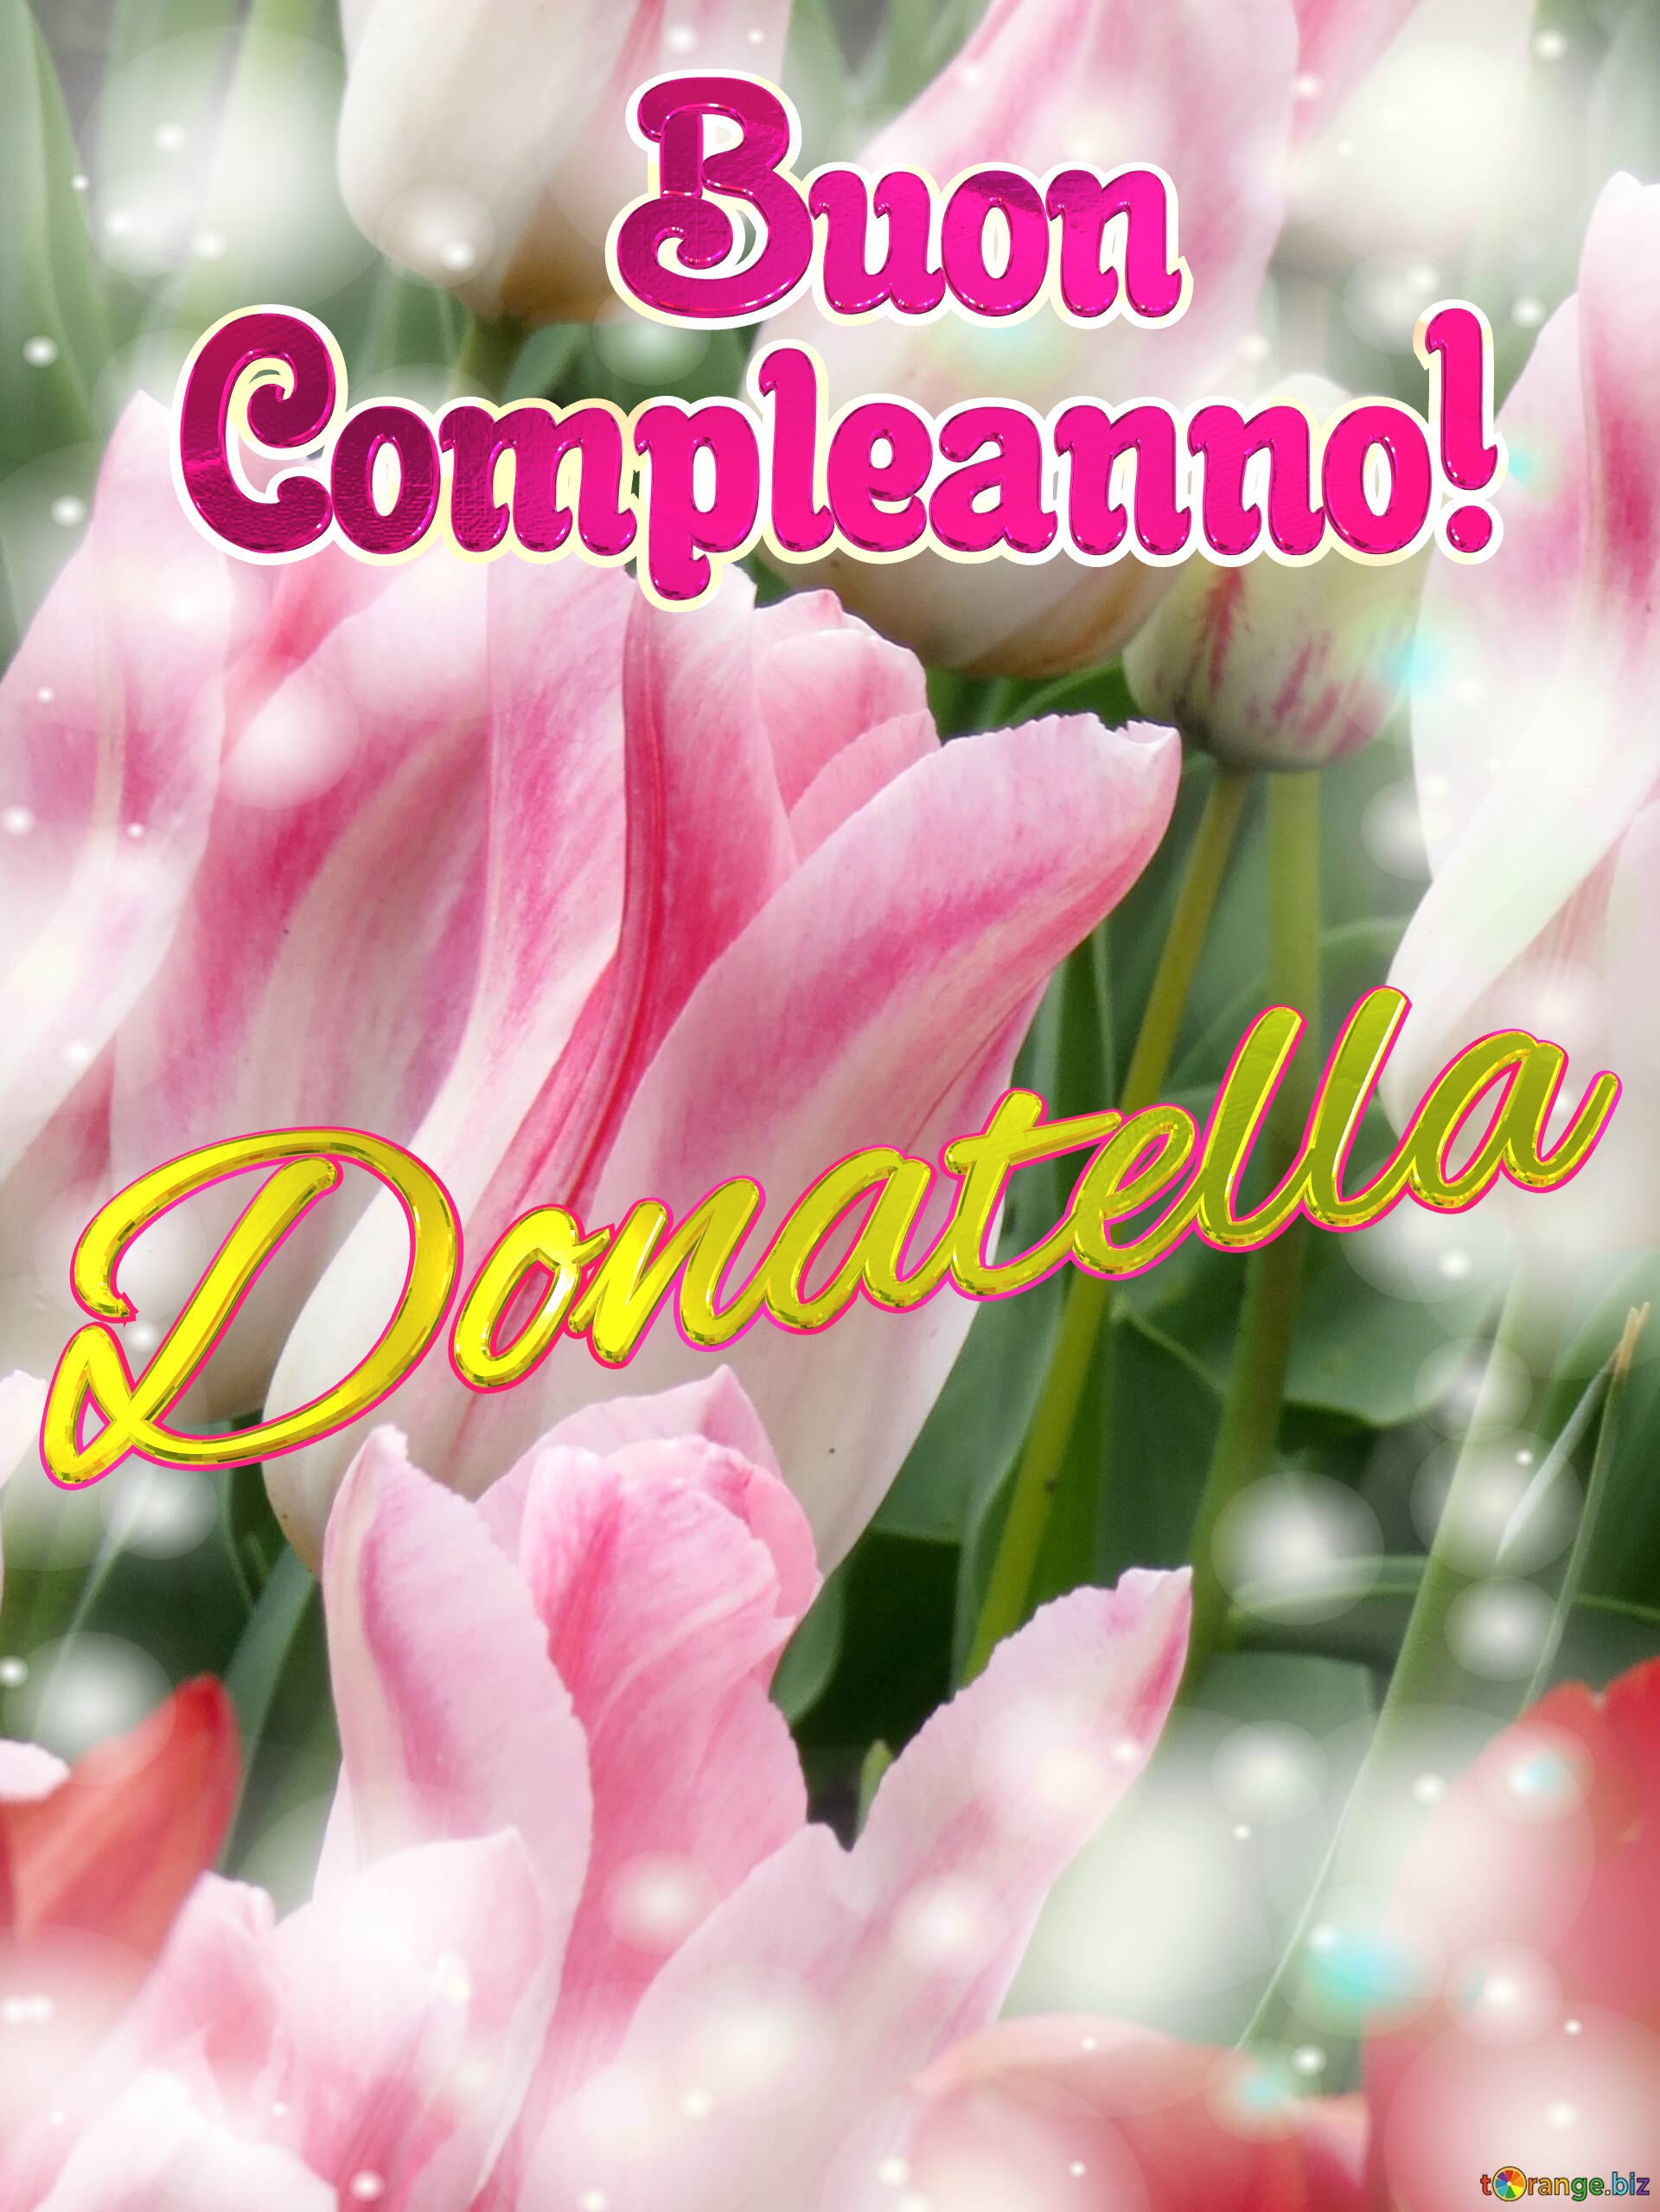       Buon  Compleanno! Donatella  Buona primavera, che questi tulipani ti portino la speranza e la felicità. №0